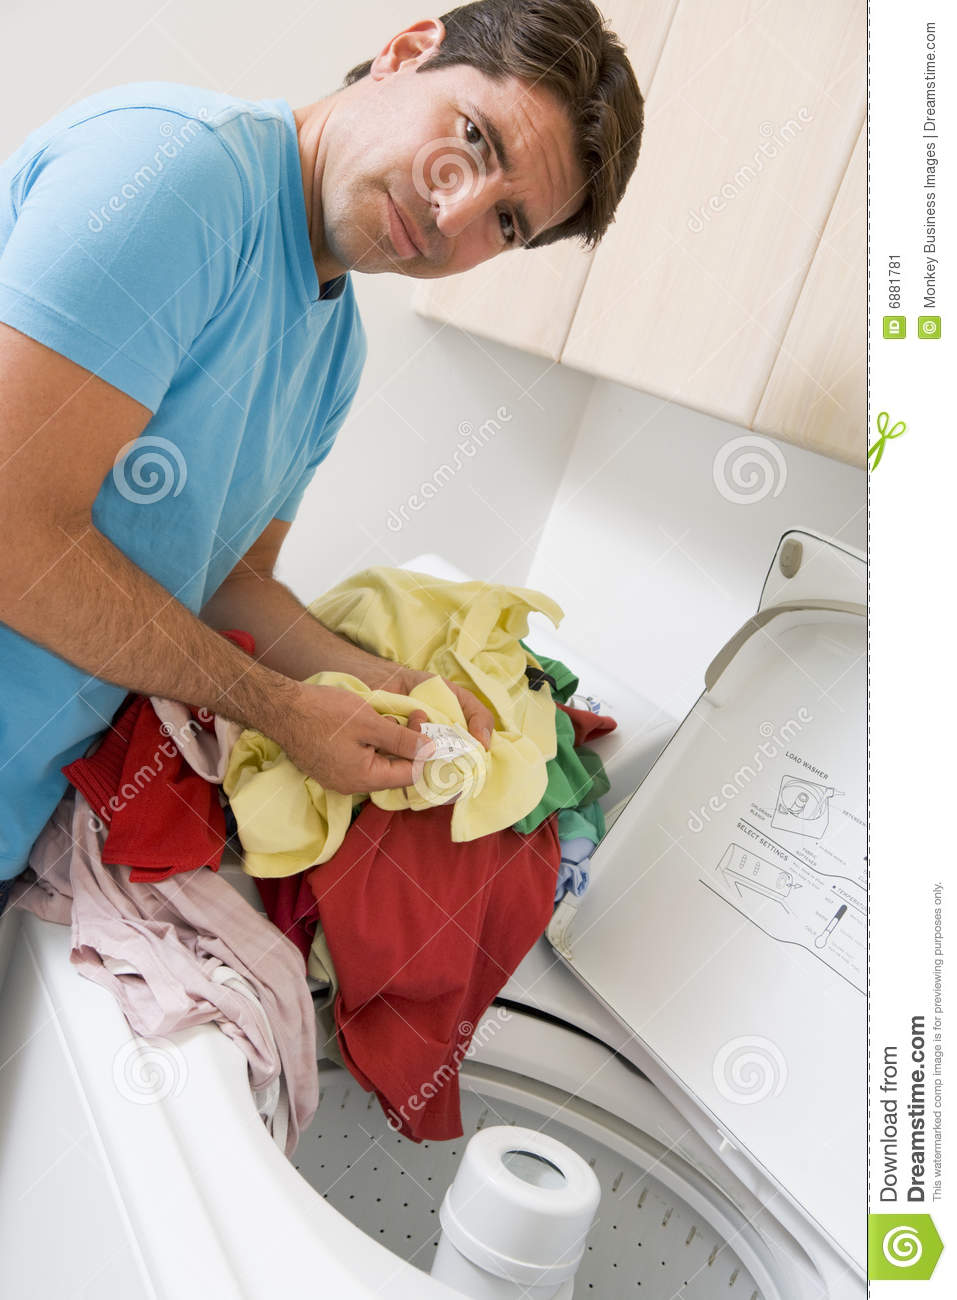 Man Doing Laundry Stock Image   Image  6881781